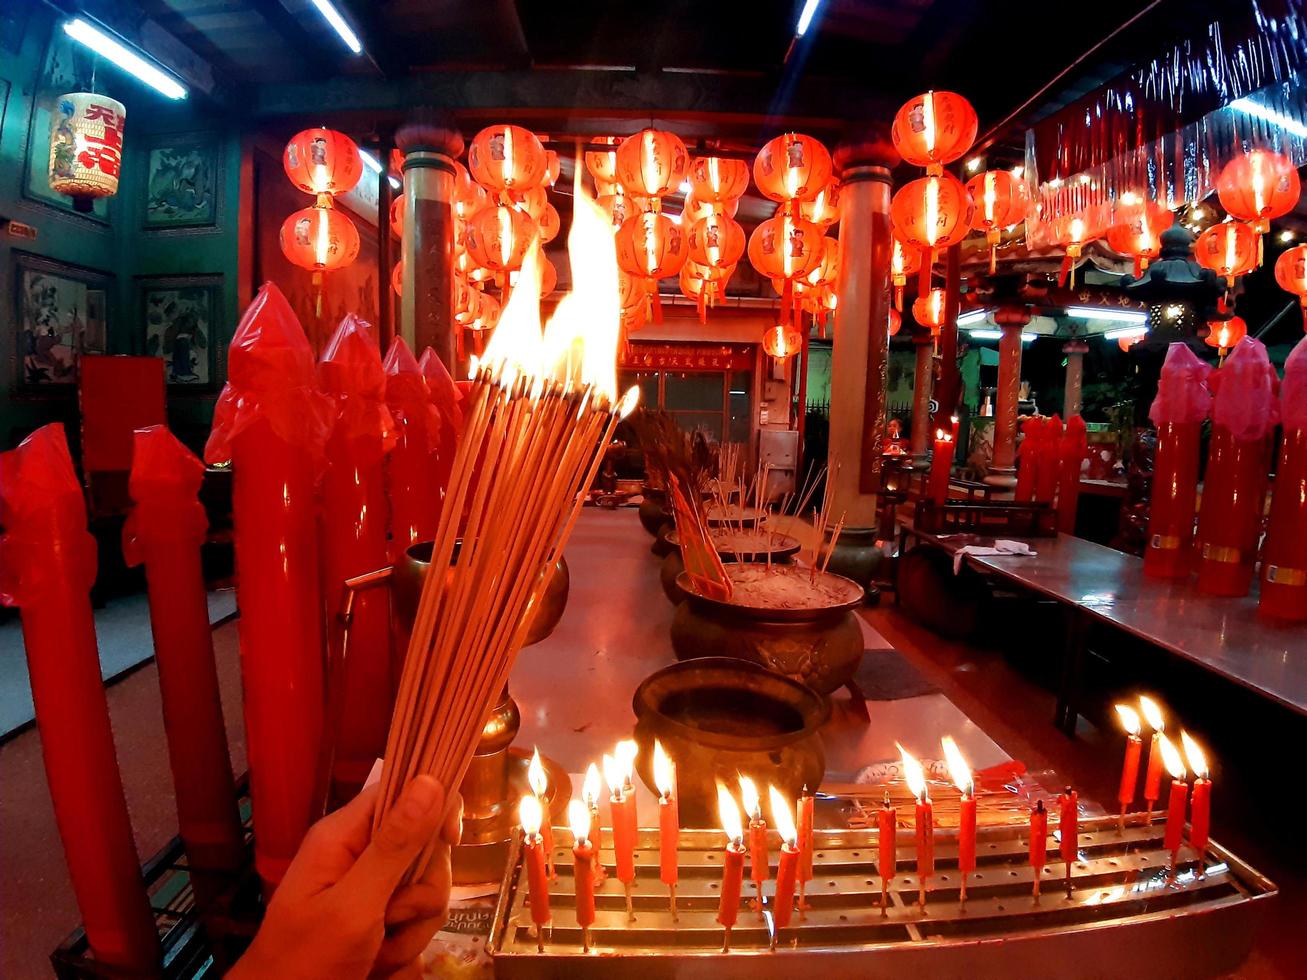 Quema de incienso en el santuario deseando buena suerte, en un santuario con velas, linternas rojas, cultura asiática foto